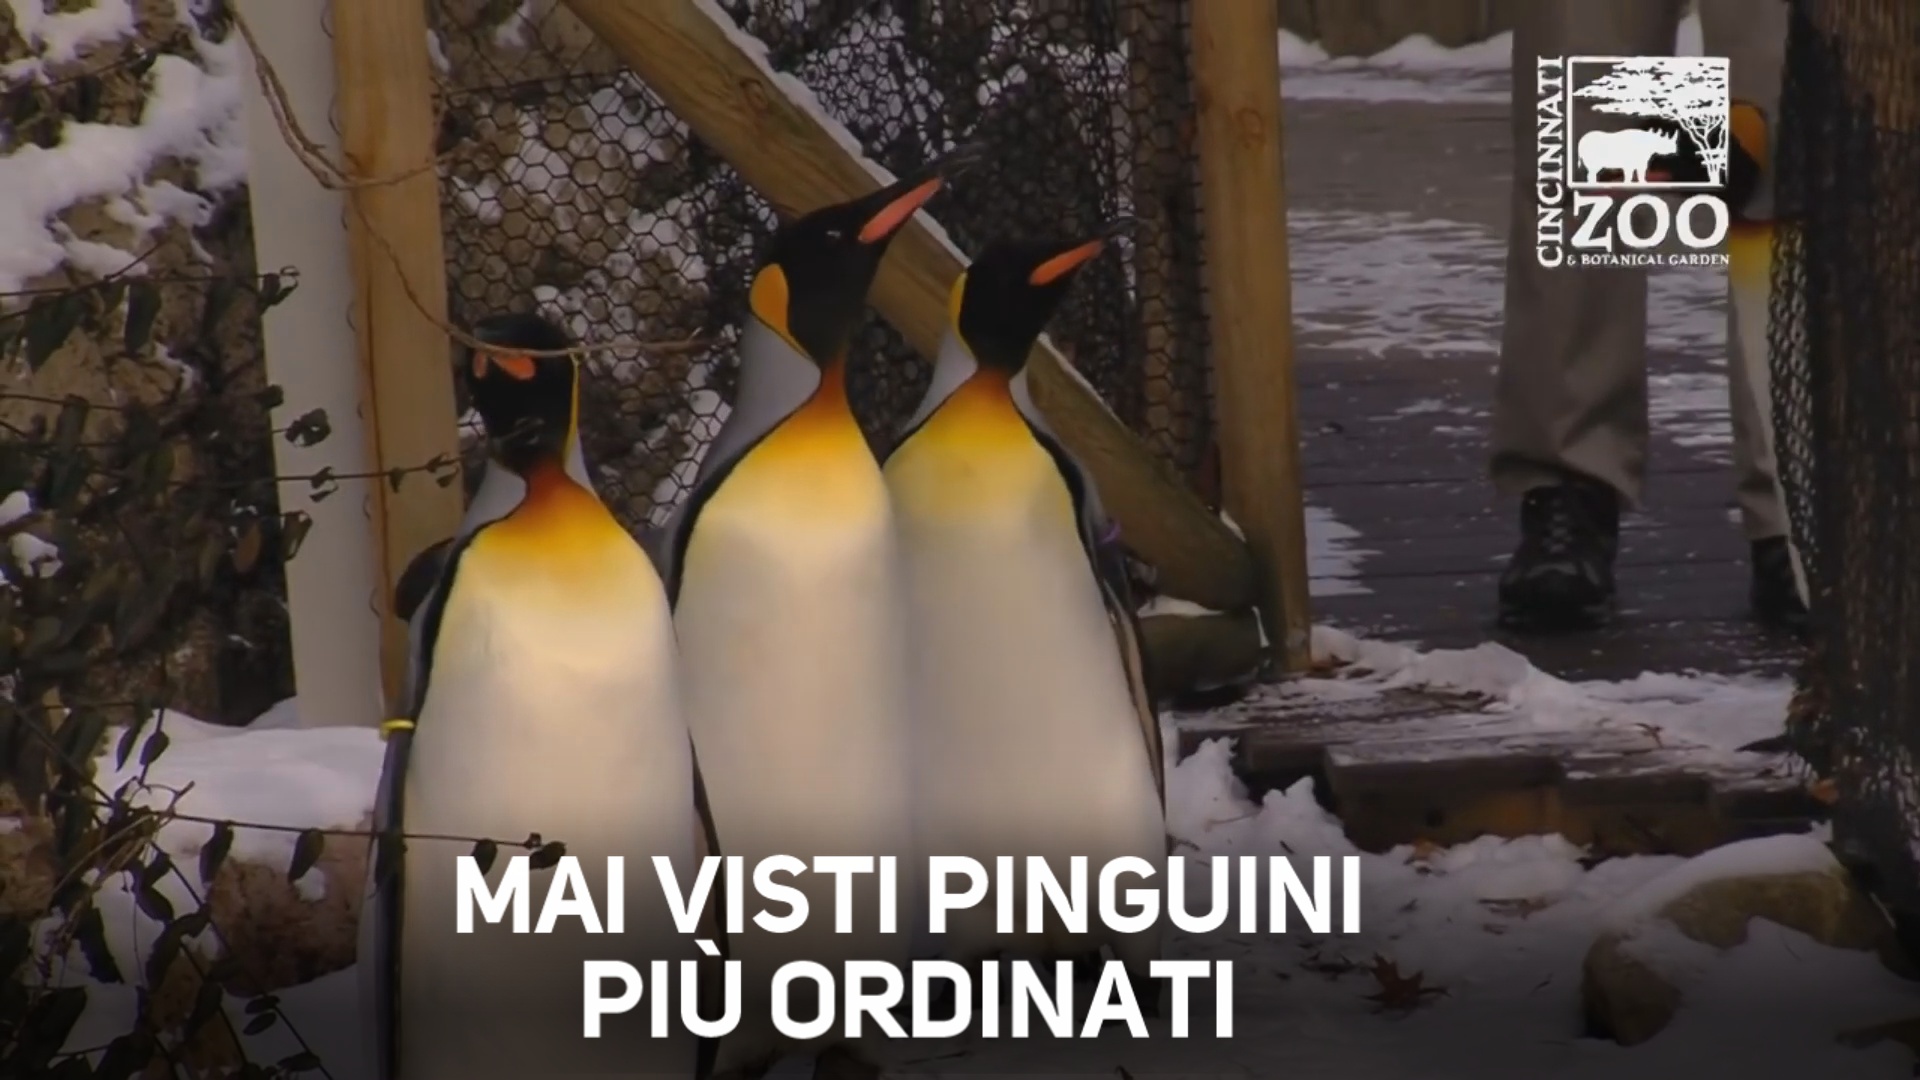 Avete mai visto una parata di pinguini?